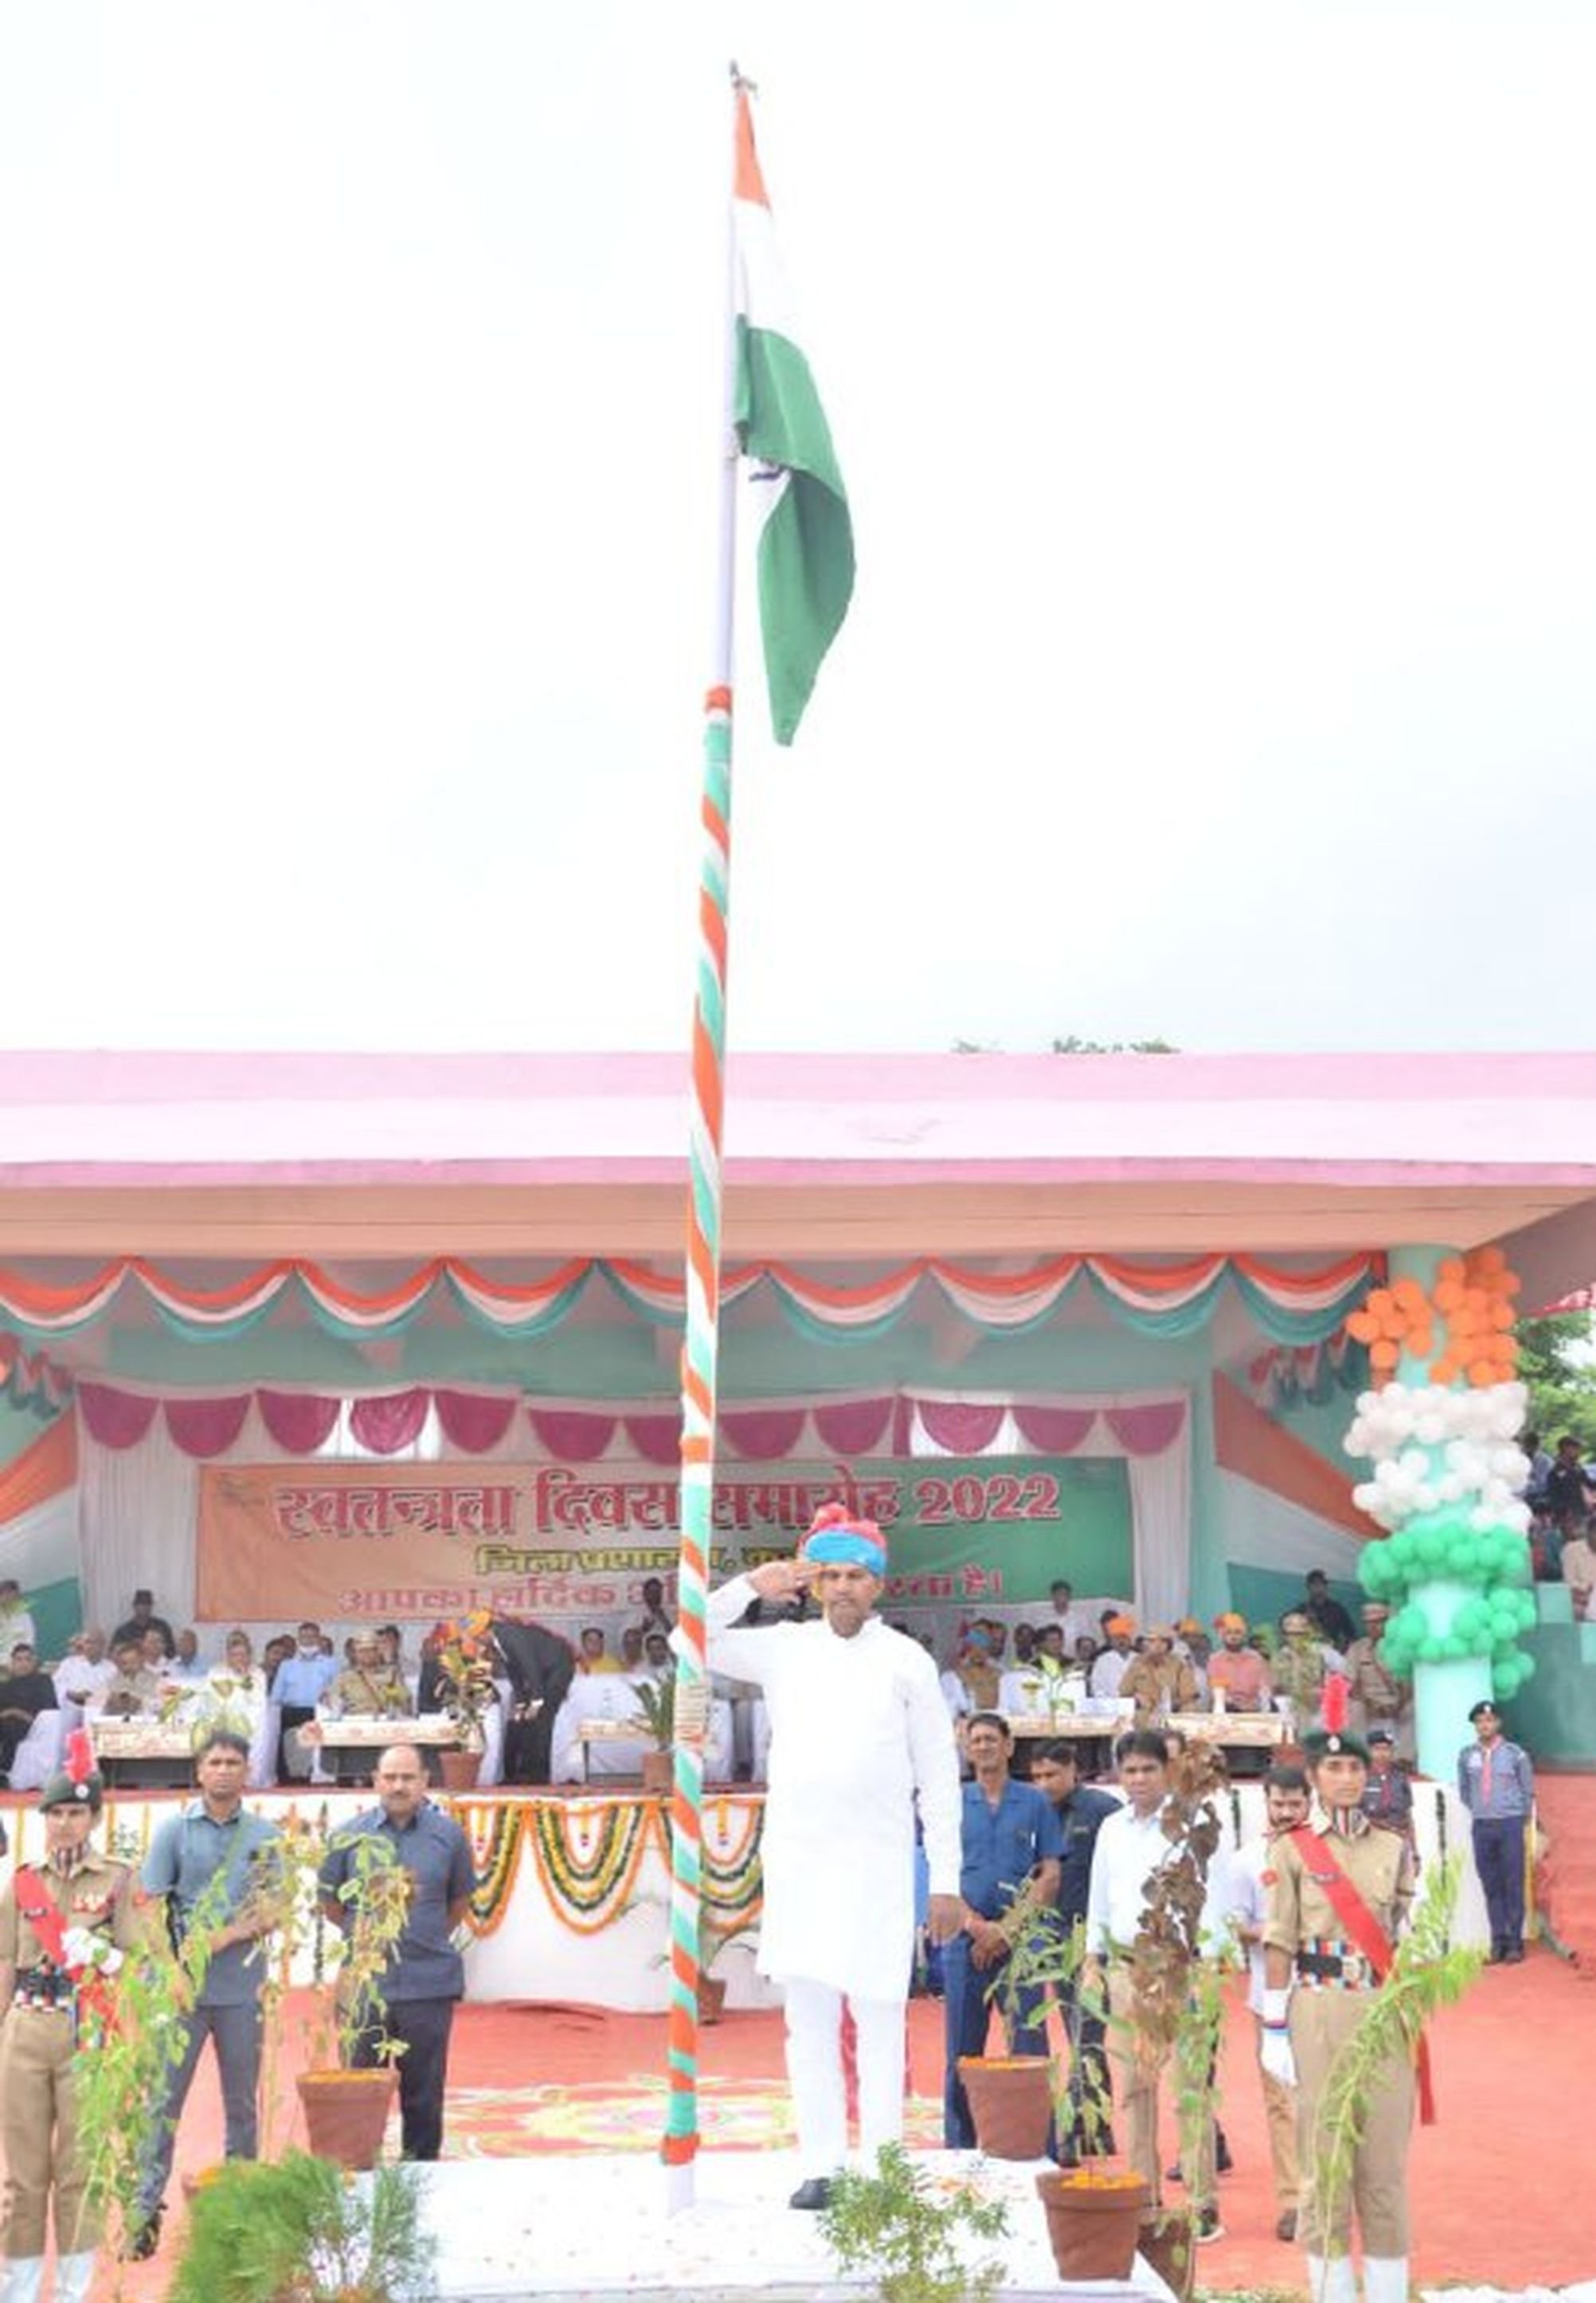 हर्षोल्लास से मनाया गया स्वतंत्रता दिवस समारोह, केबिनेट मंत्री रमेशचन्द मीना ने किया ध्वजारोहण